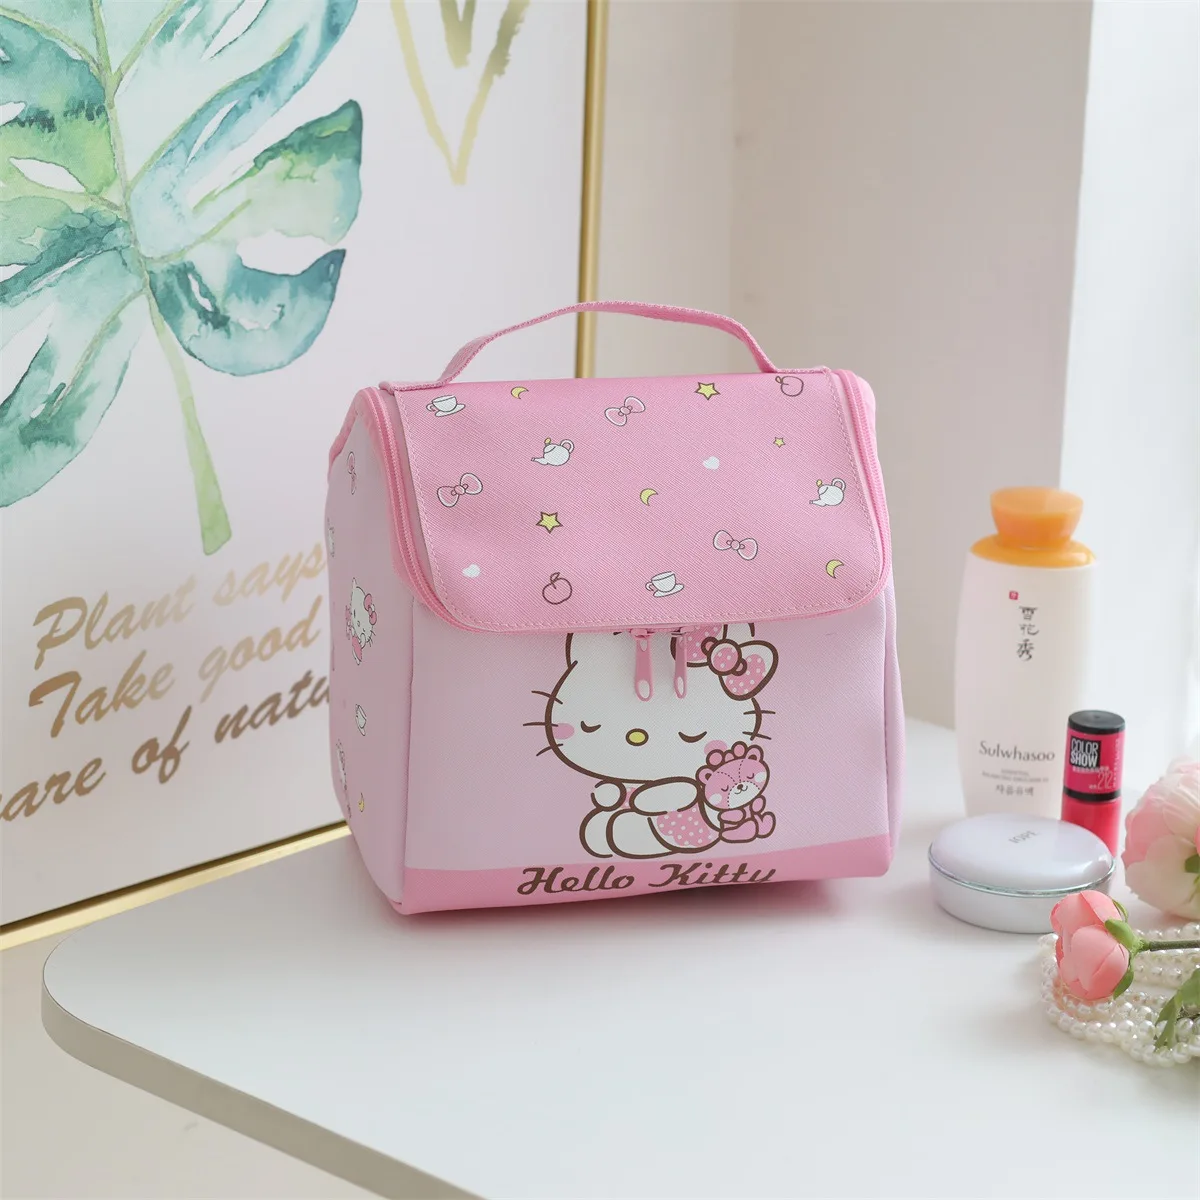 Sanrio hello kitty милый мультфильм 3D сумка для хранения косметичка для девочек и мальчиков сумка-тоут сумка-органайзер pu Kuromi cinnamon Melody дорожная сумка